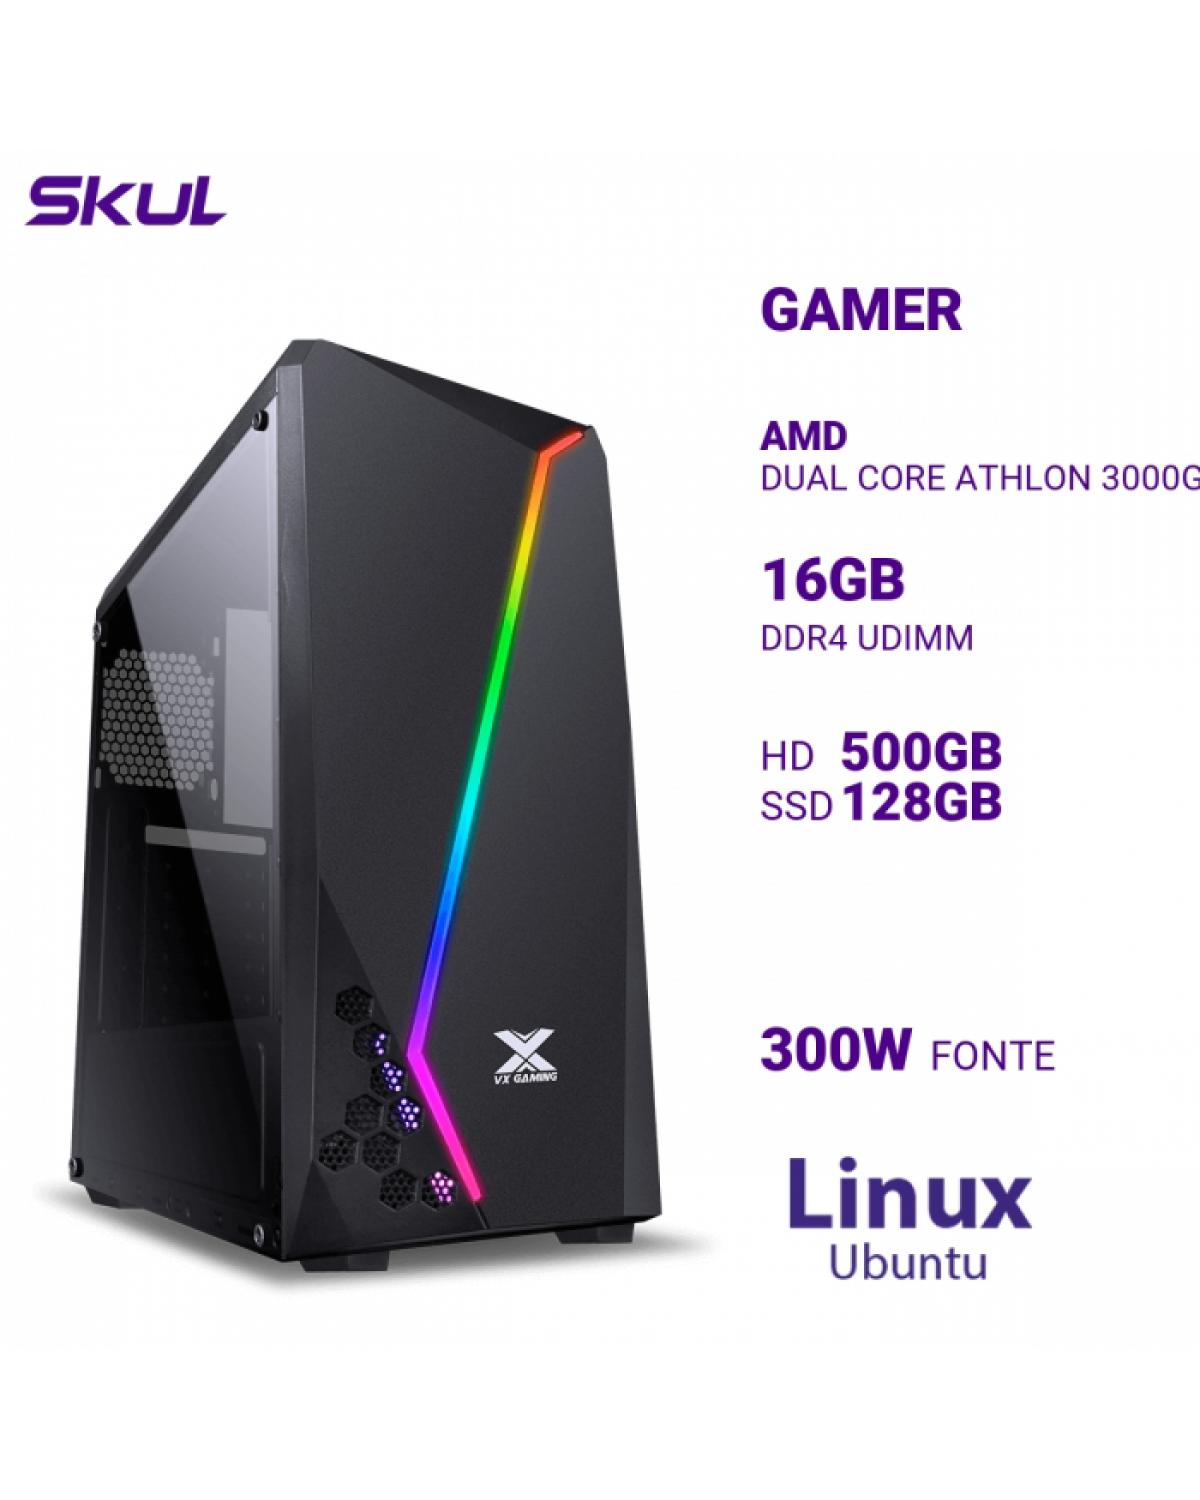 COMPUTADOR GAMER 1000 DUAL CORE ATHLON 3000G 3.50GHZ MEM 16GB DDR4 HD 500GB SSD 128GB FONTE 300W LINUX